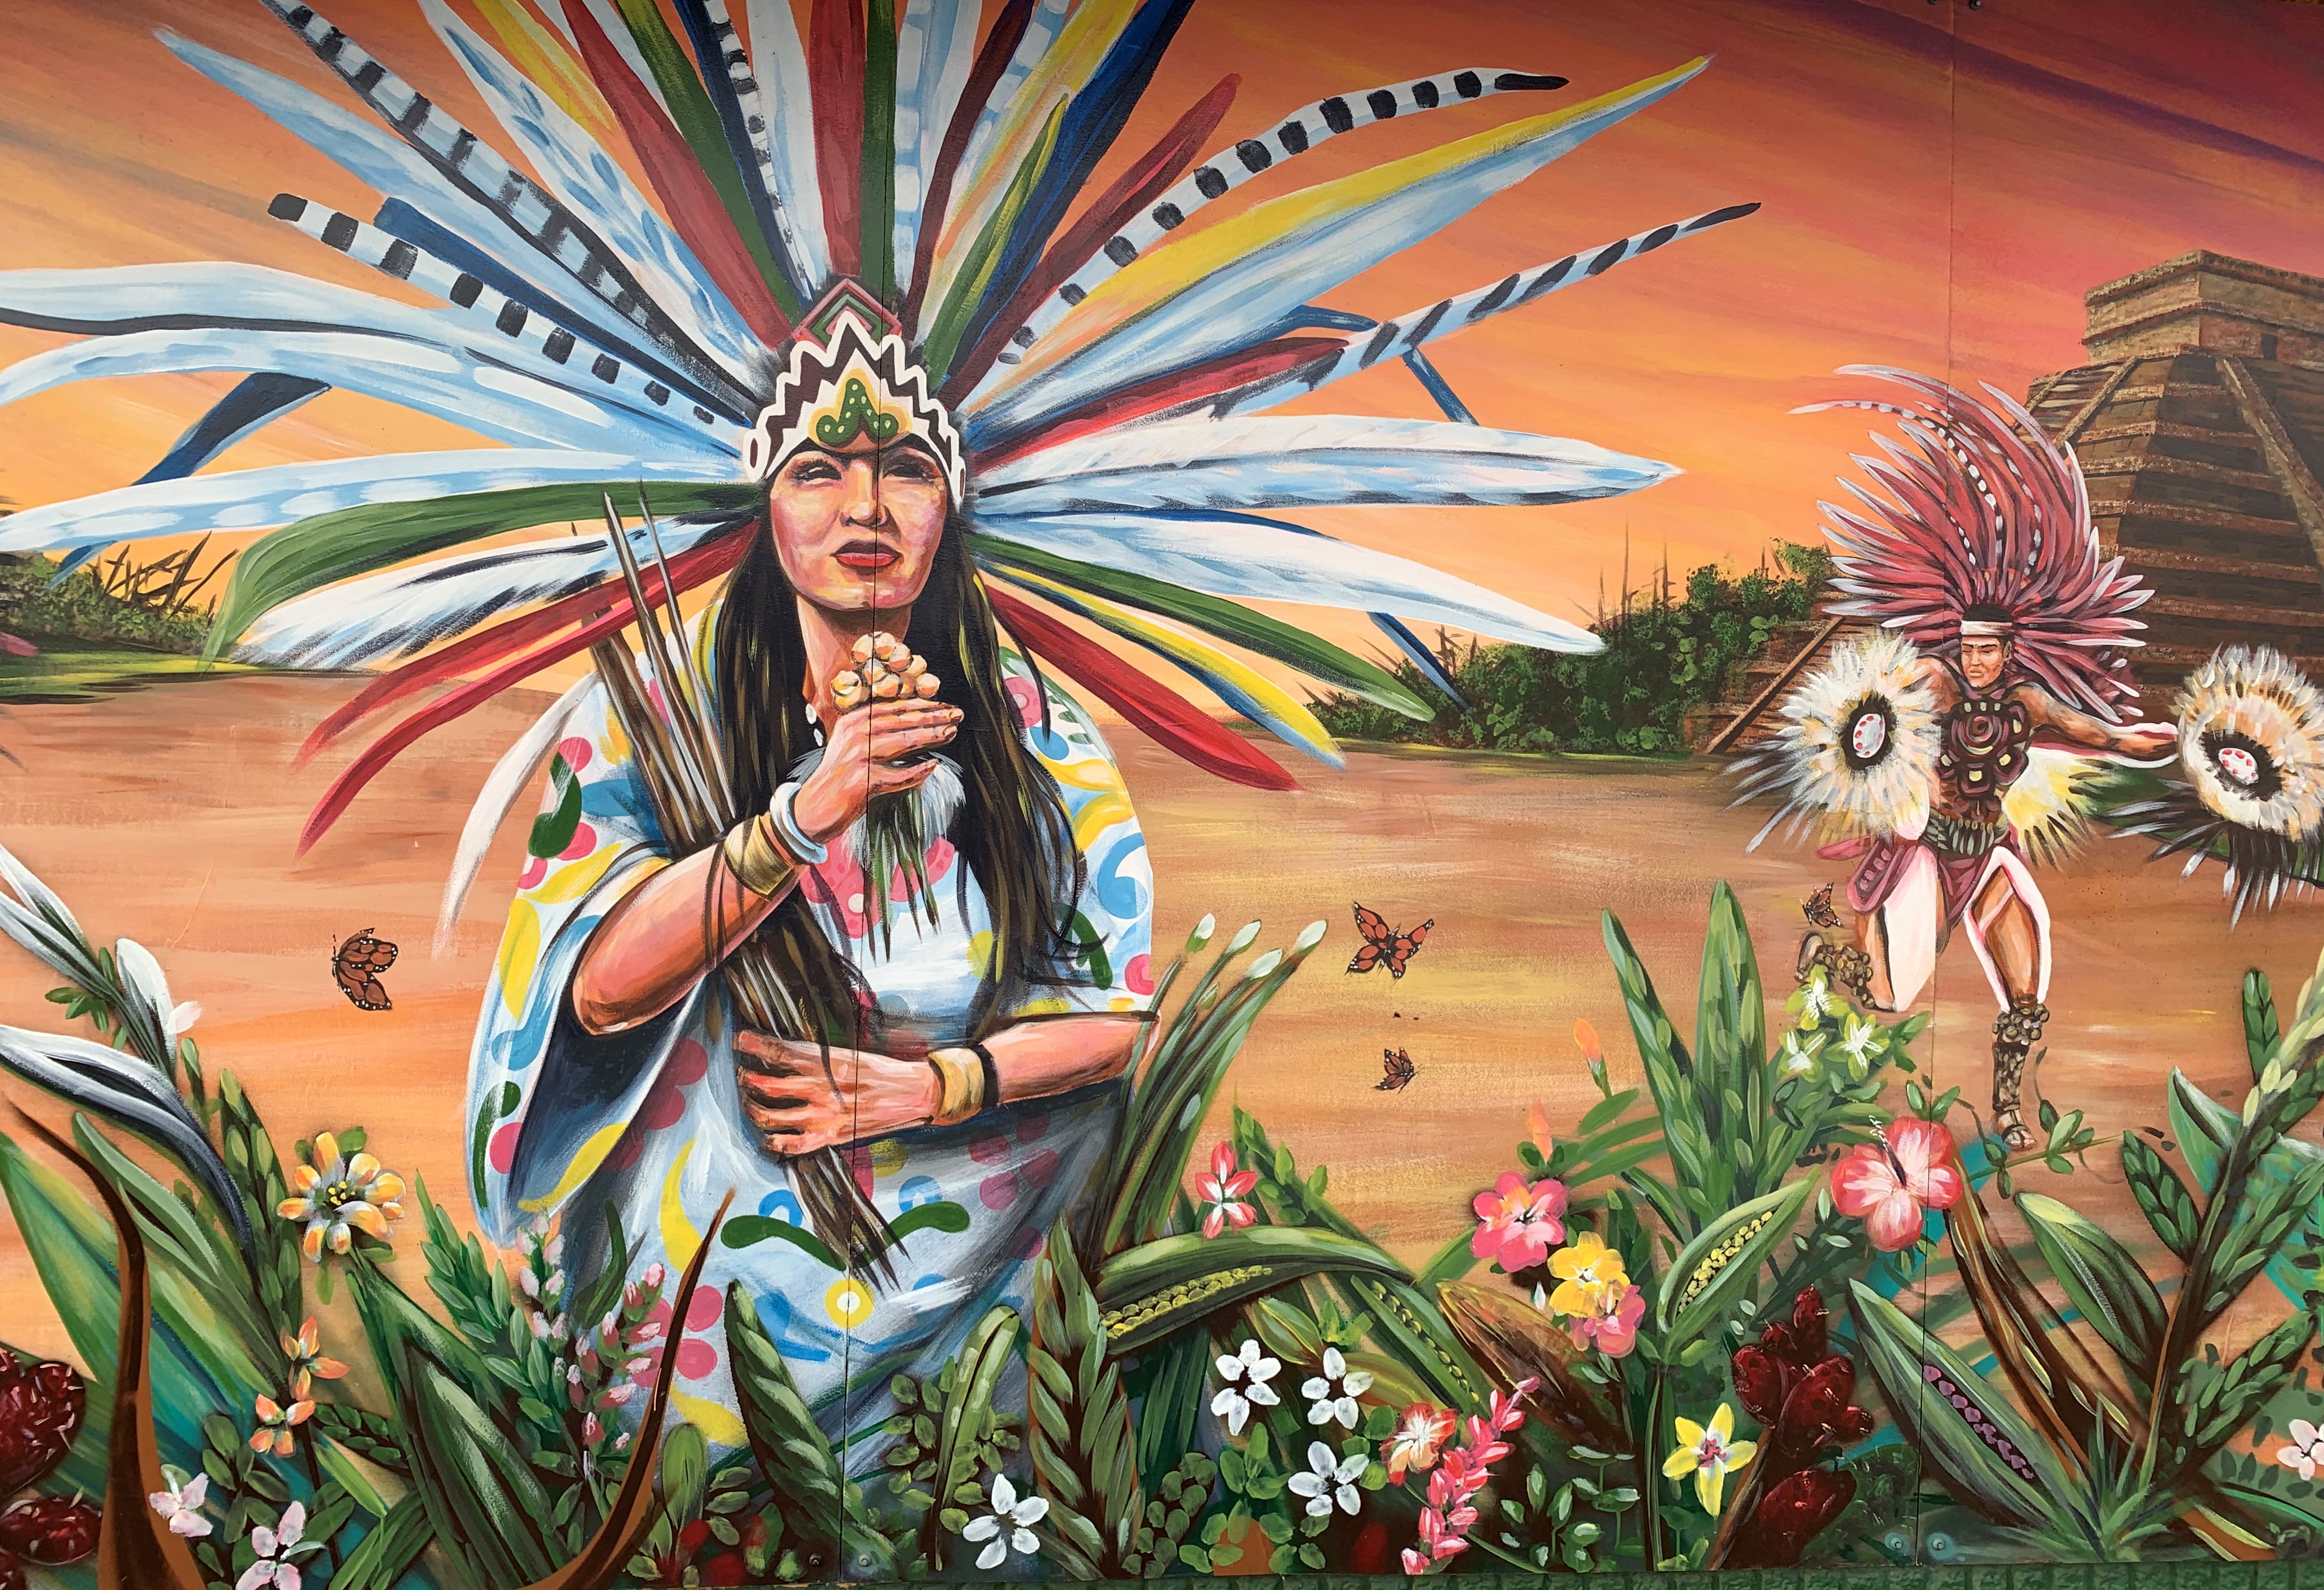 Un mural en East Chicago, Indiana, muestra a dos personas con ropas decoradas con largas y coloridas plumas, representativas de las culturas indígenas mexicanas, junto a mariposas monarcas.